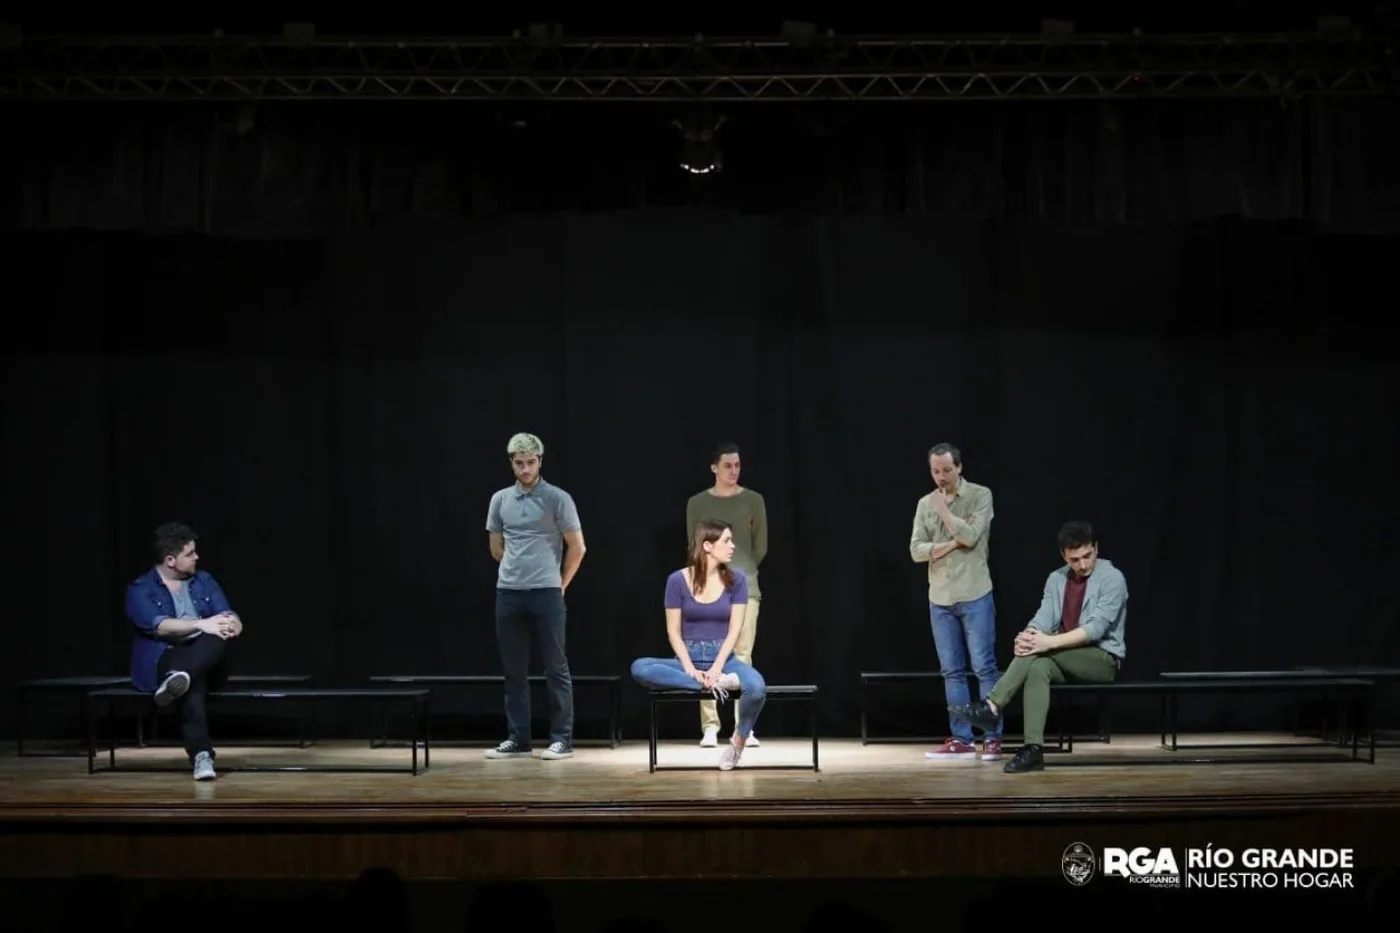 Más de 700 vecinos presenciaron la obra teatral “Jauría: un juicio que marca un antes y un después”